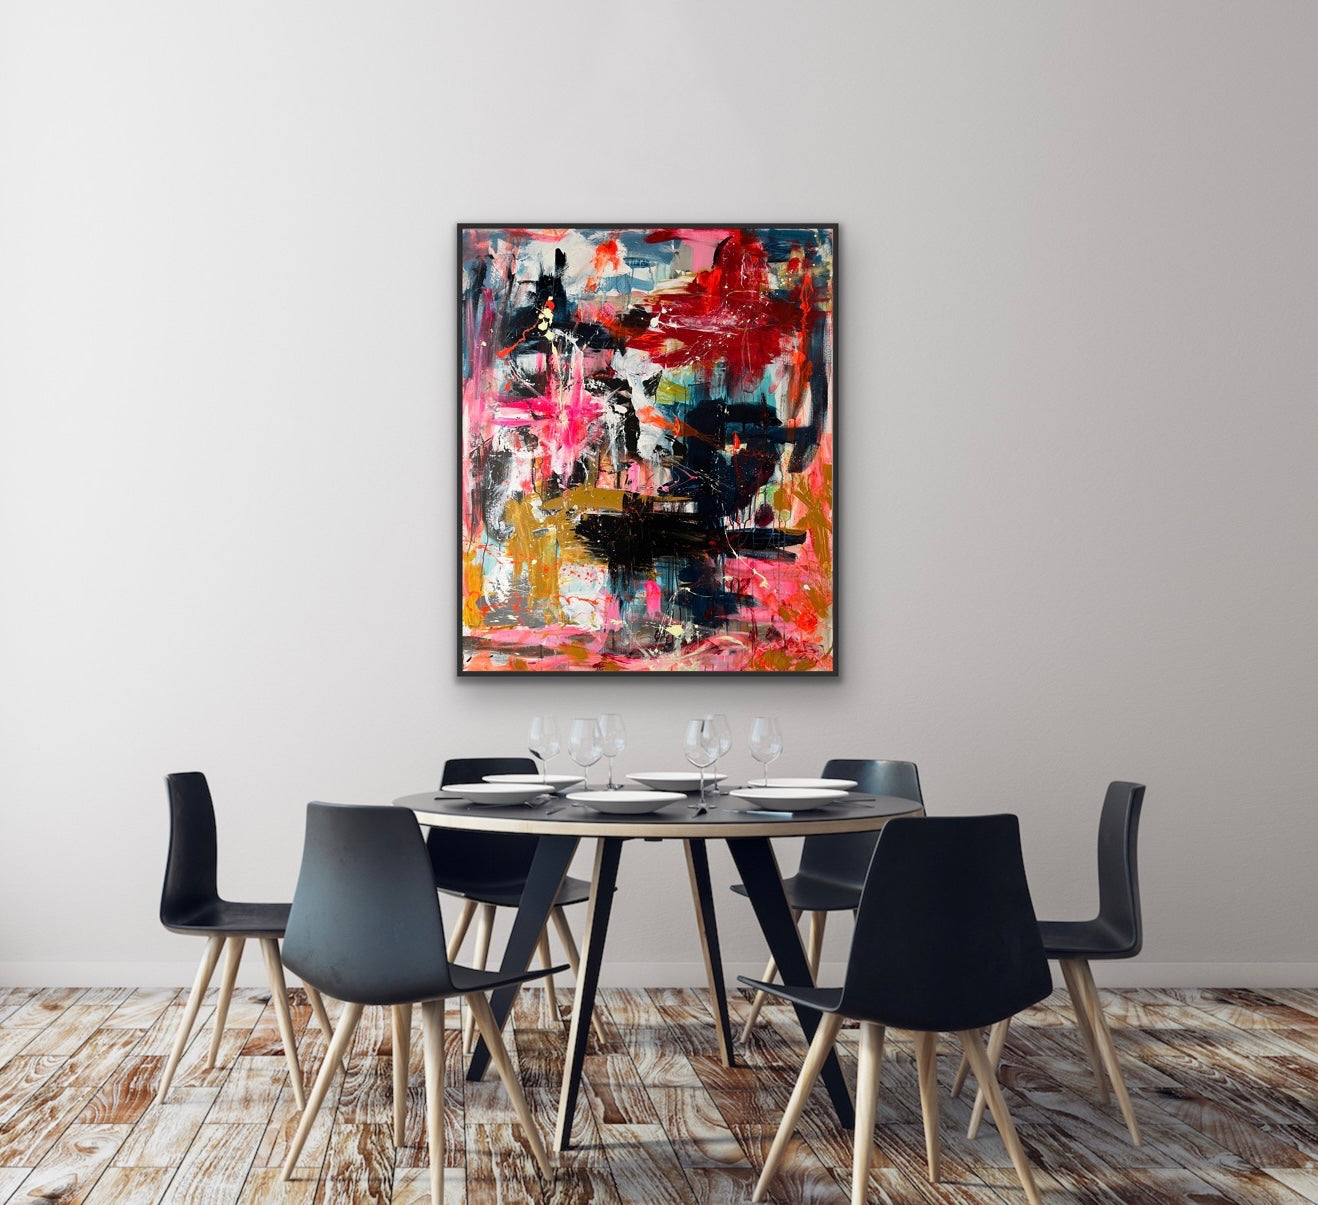 Abstrakt maleri, 120x100 cm, "The fullness of living" by Lone Reedtz , Abstrakt ekspressivt akrylmaleri på lærred